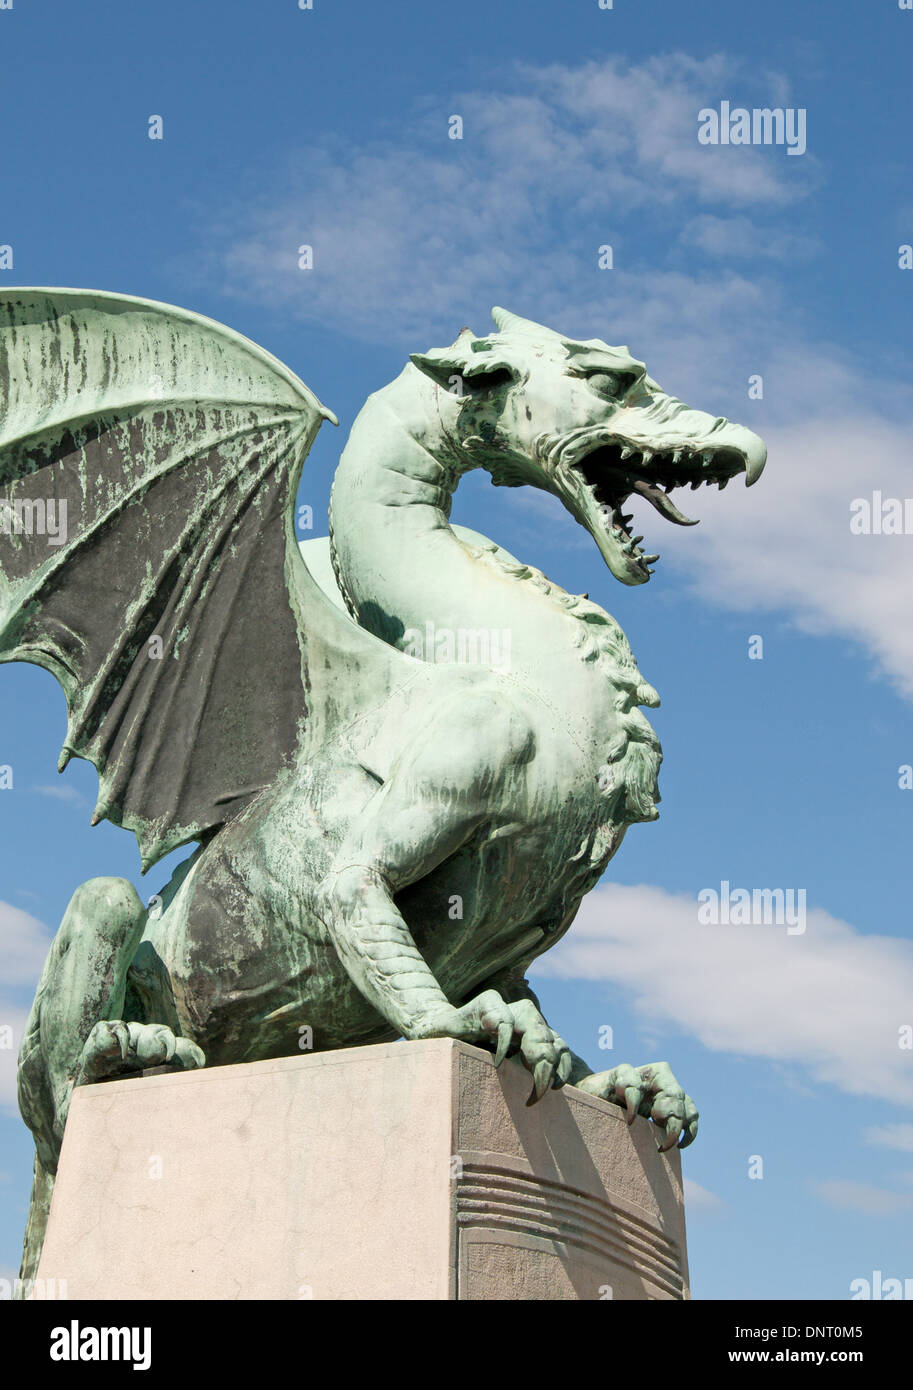 Dragon statue guarding bridge over the Ljubljanica River in Ljubljana, Slovenia Stock Photo